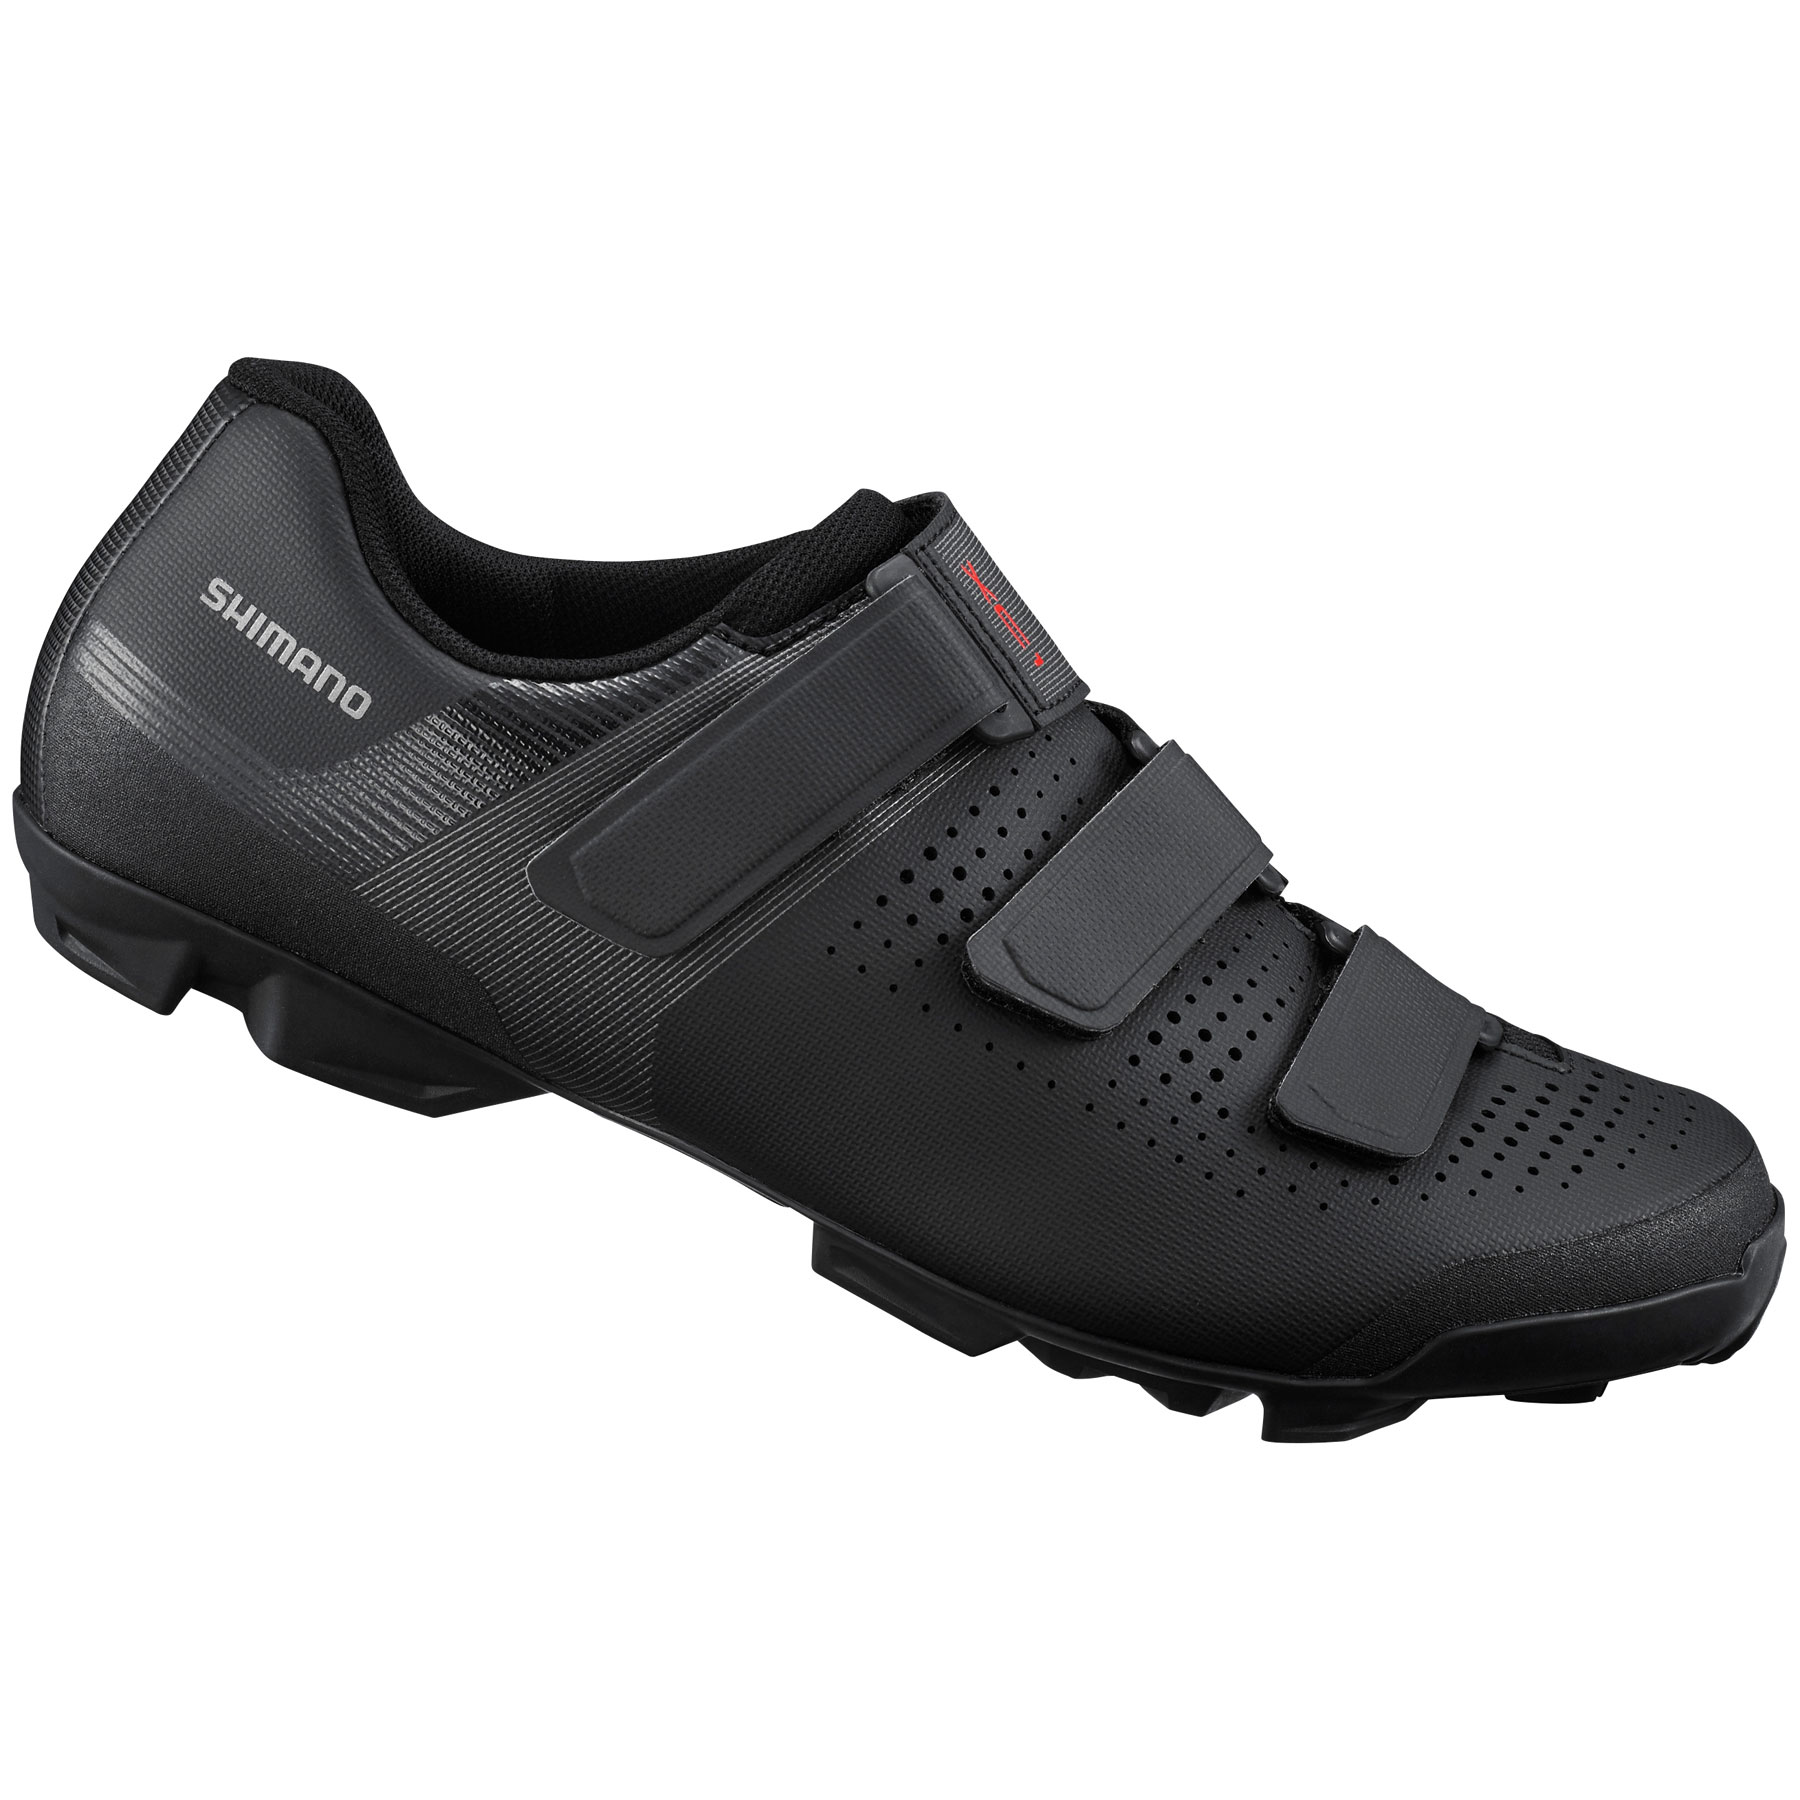 Produktbild von Shimano SH-XC100 MTB Schuhe Herren - schwarz